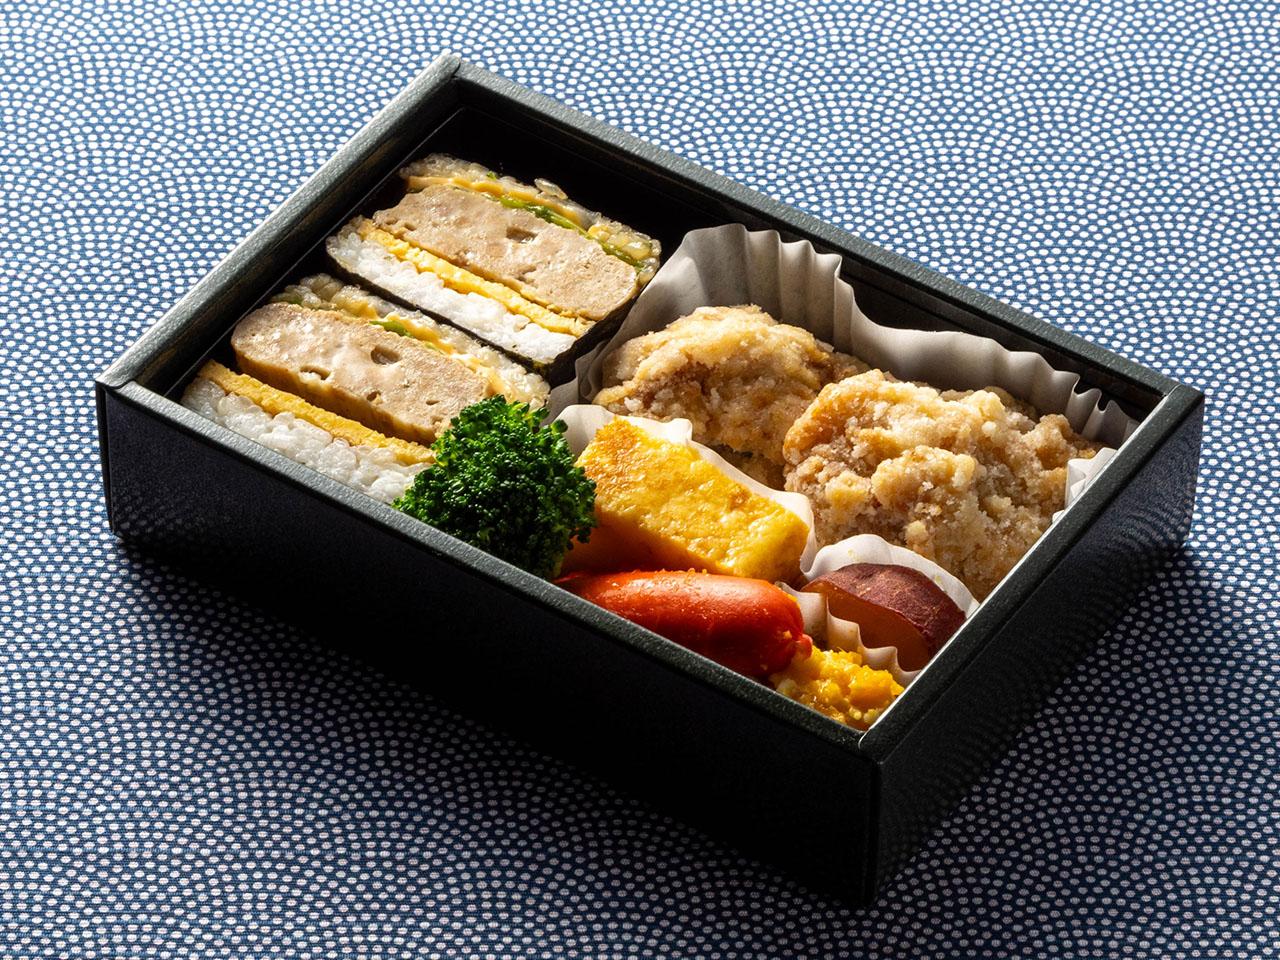 "นี่คือรูปภาพอาหารบนเครื่อง ข้าวกล่องโอมูซูบิเบ็นโต"